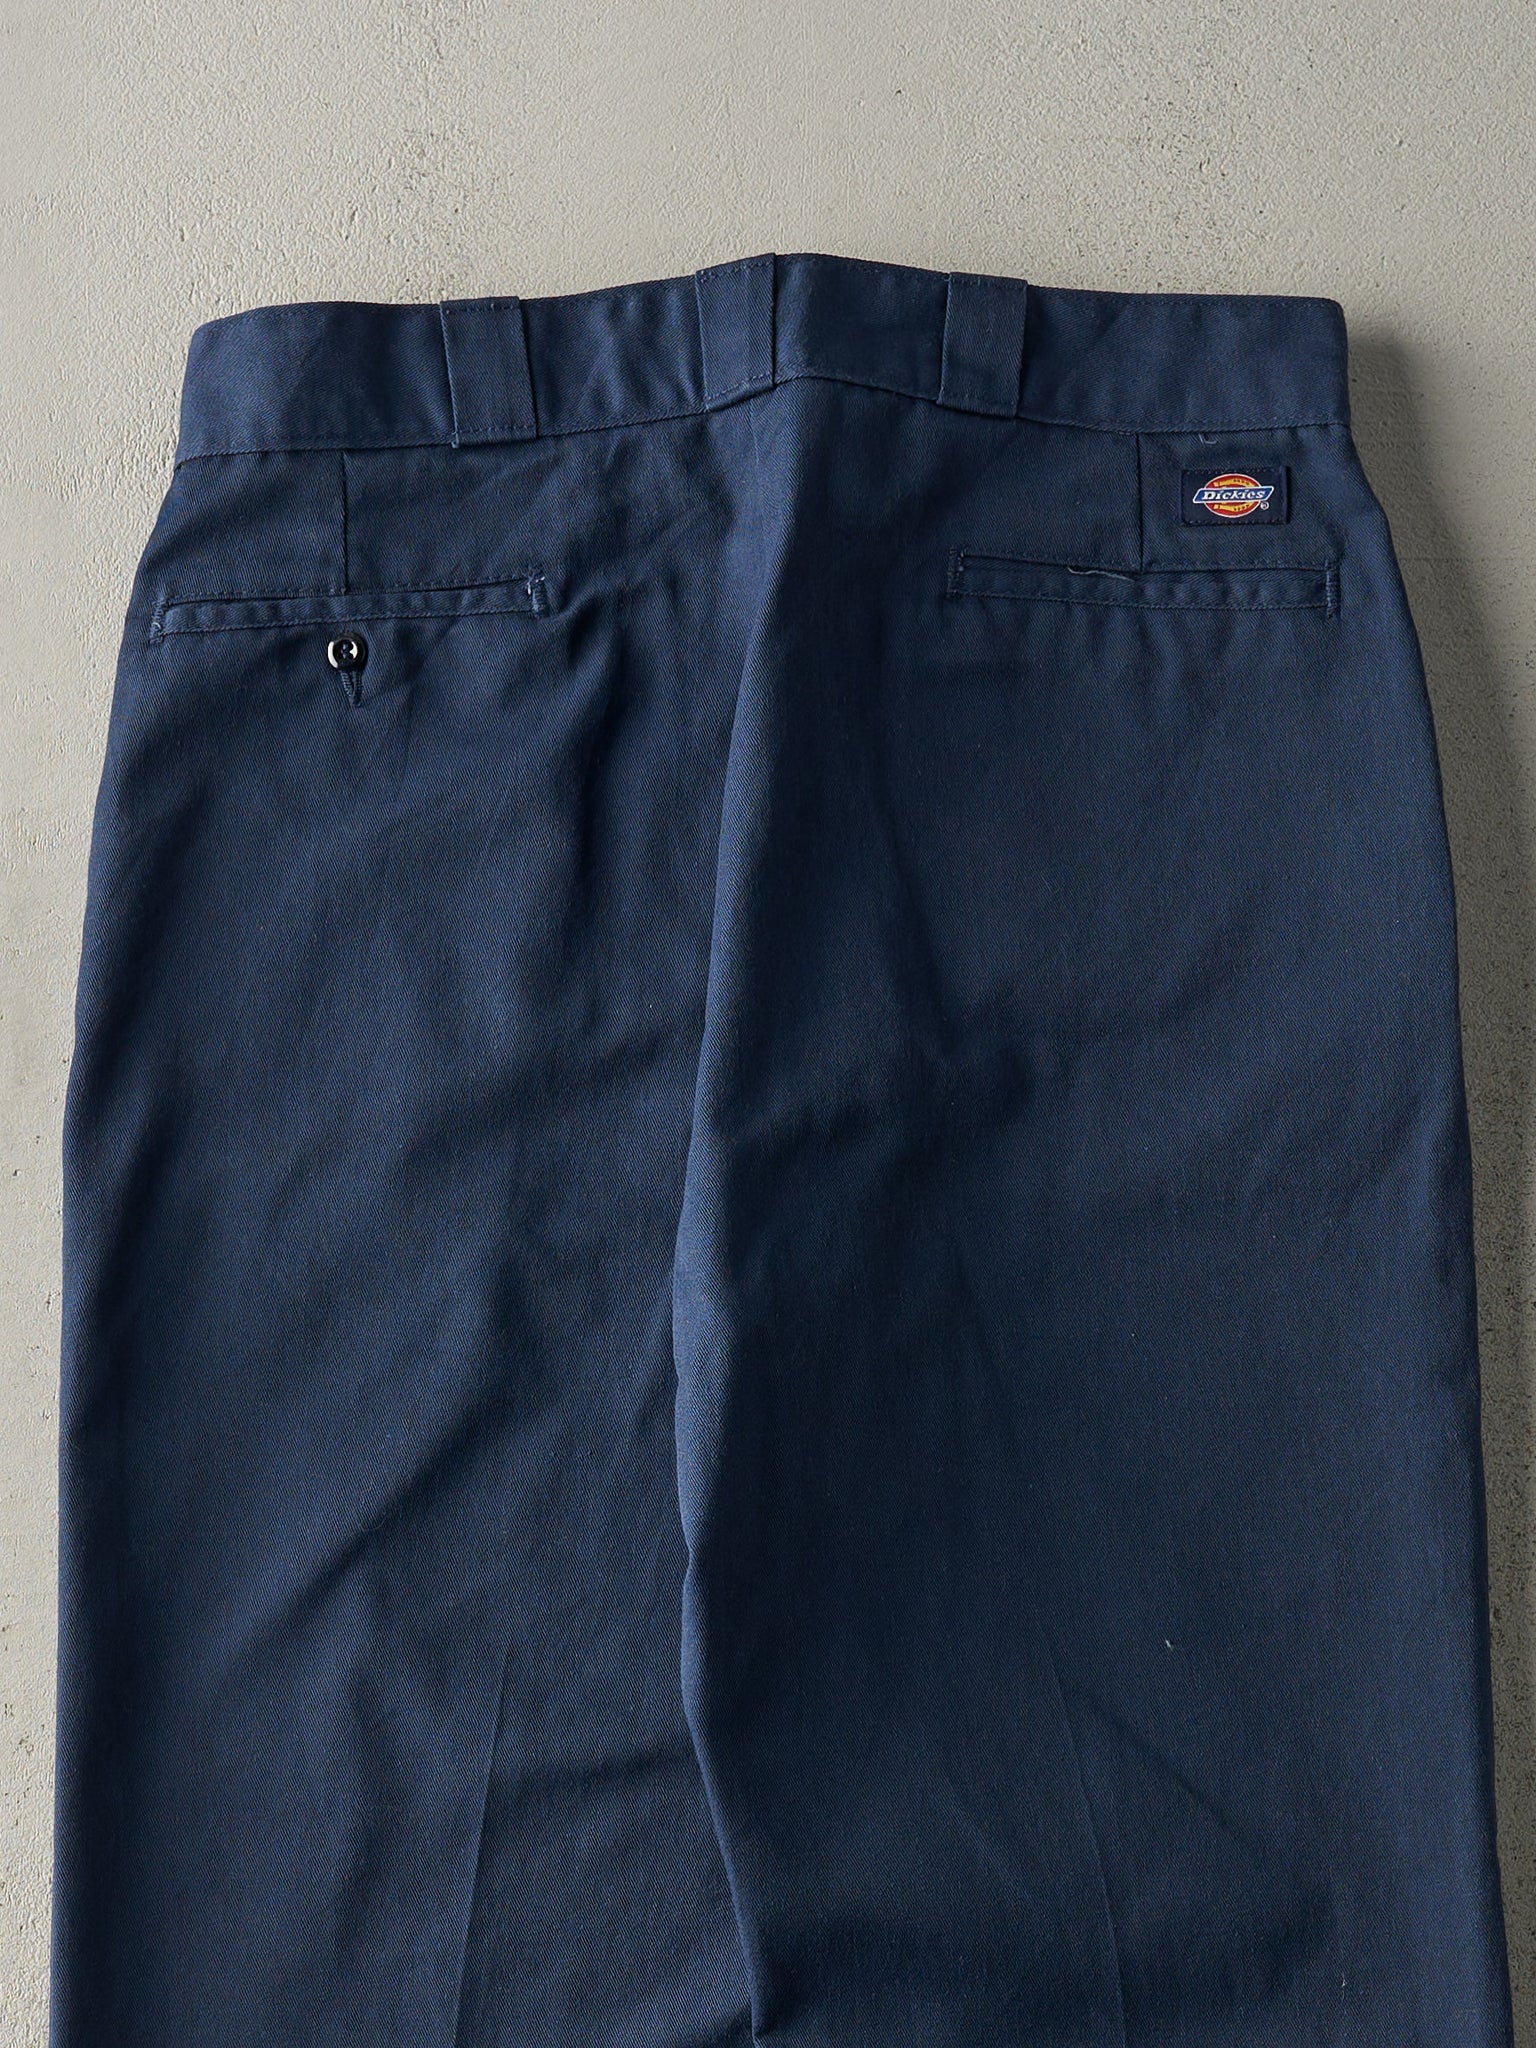 Vintage 90s Navy Blue Dickies Work Pants (34x30.5)